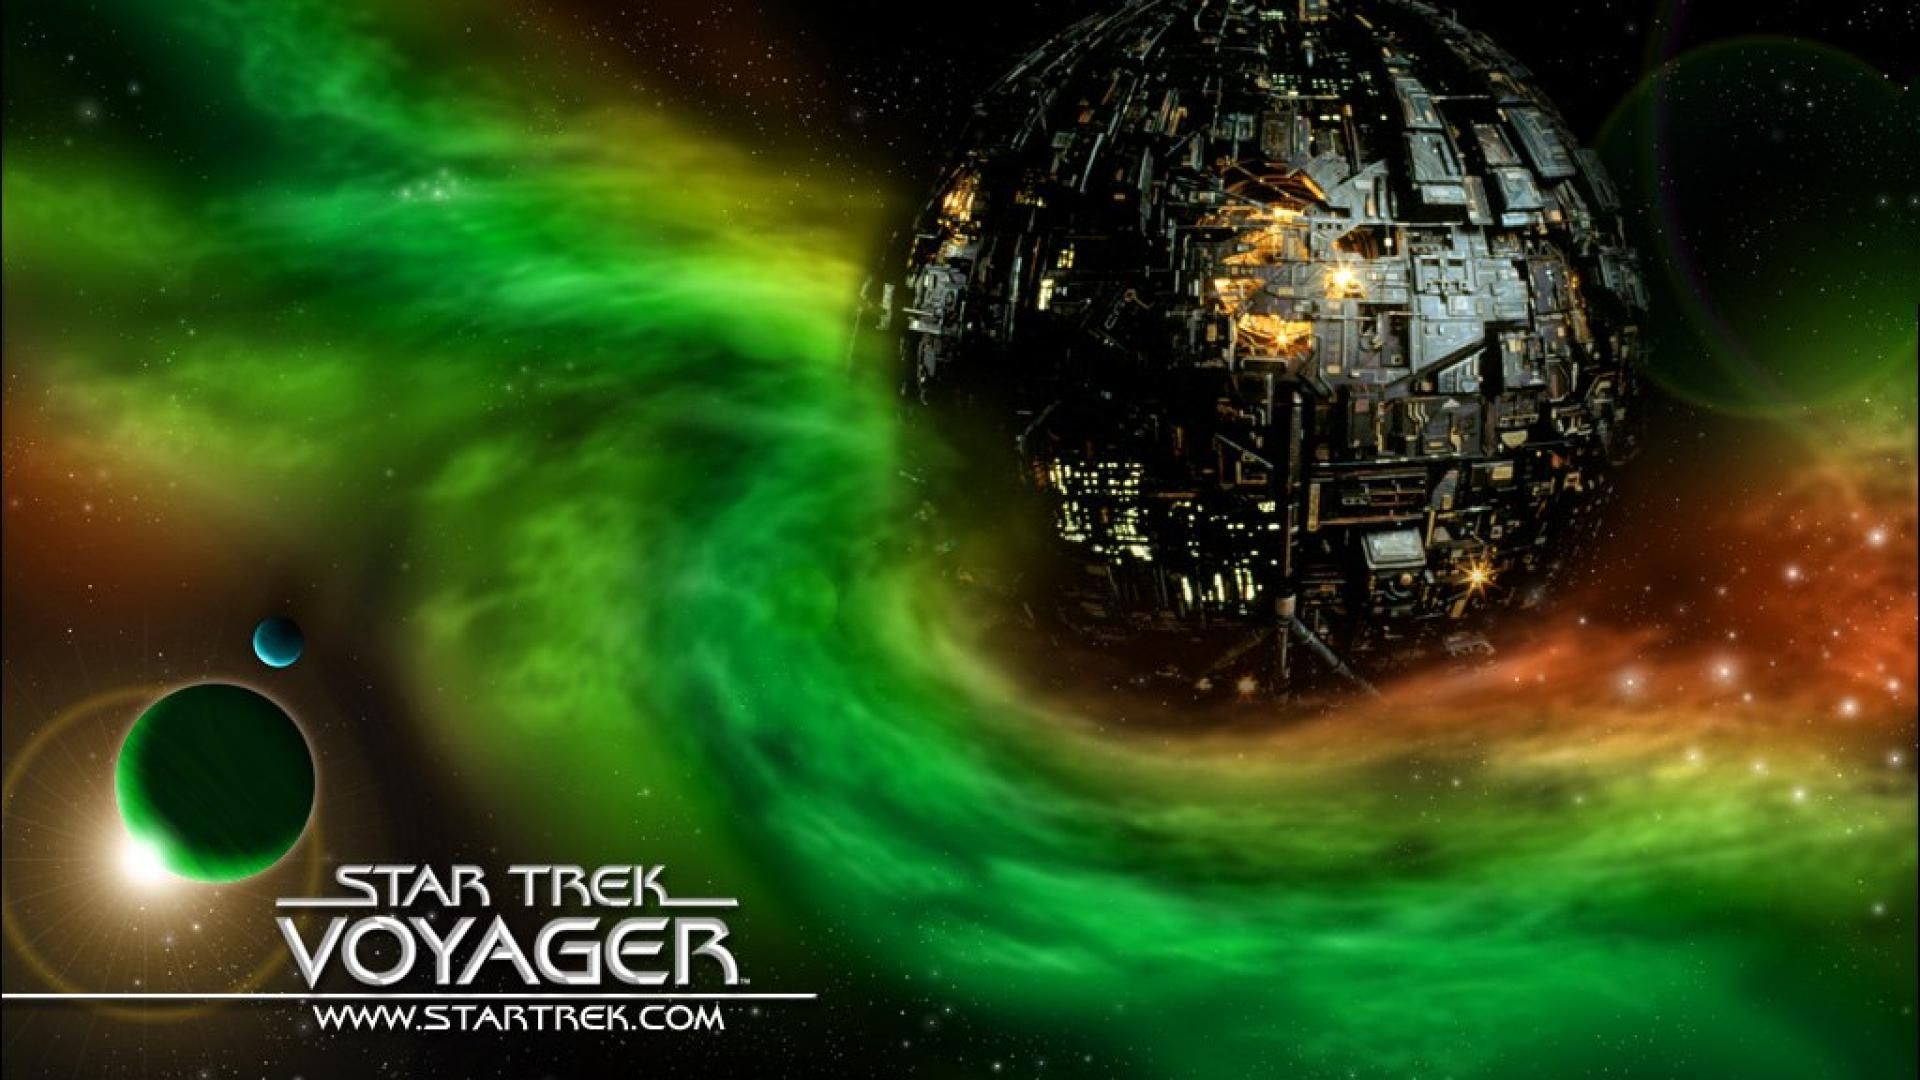 HD Borg Star Trek Wallpaper. Star trek wallpaper, Star trek art, Star trek voyager